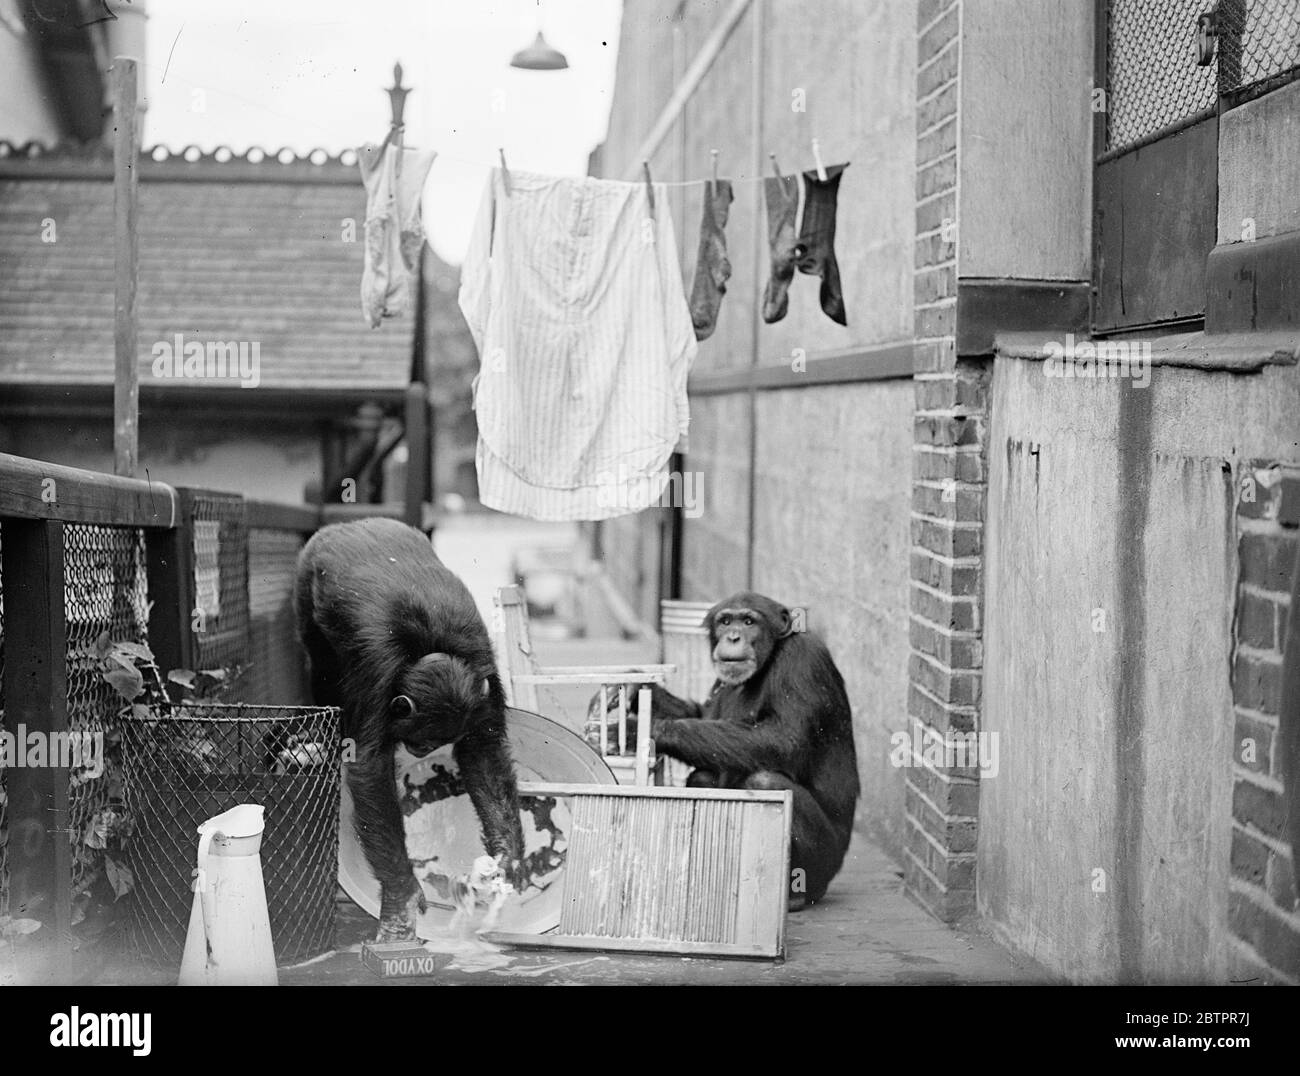 Die Schimpansen wuschen aber! Peter hängt die Kleider aus. Als Peter und Jackie, die Schimpansen des Londoner Zoos, hörten, dass ihr Pfleger gerade in den Urlaub gehen würde, beschlossen sie offenbar, seine Wäsche für ihn zu waschen und könnten seine Rechnung für die Wäsche gekürzt werden. Jedenfalls waren ein Wasch- und Scheuerbrett fertig, zusammen mit viel "Material" in Form von Socken und Hemden, und das Affenhaus, die Wäsche war bald in vollem Betrieb!. Foto zeigt, eine Überraschung für die Schimpansen, wenn Peter, nicht sehr überraschend, über die Wanne tropft und das Wasser über den Boden wirbelt. Jackie, rechts, gibt auf Stockfoto